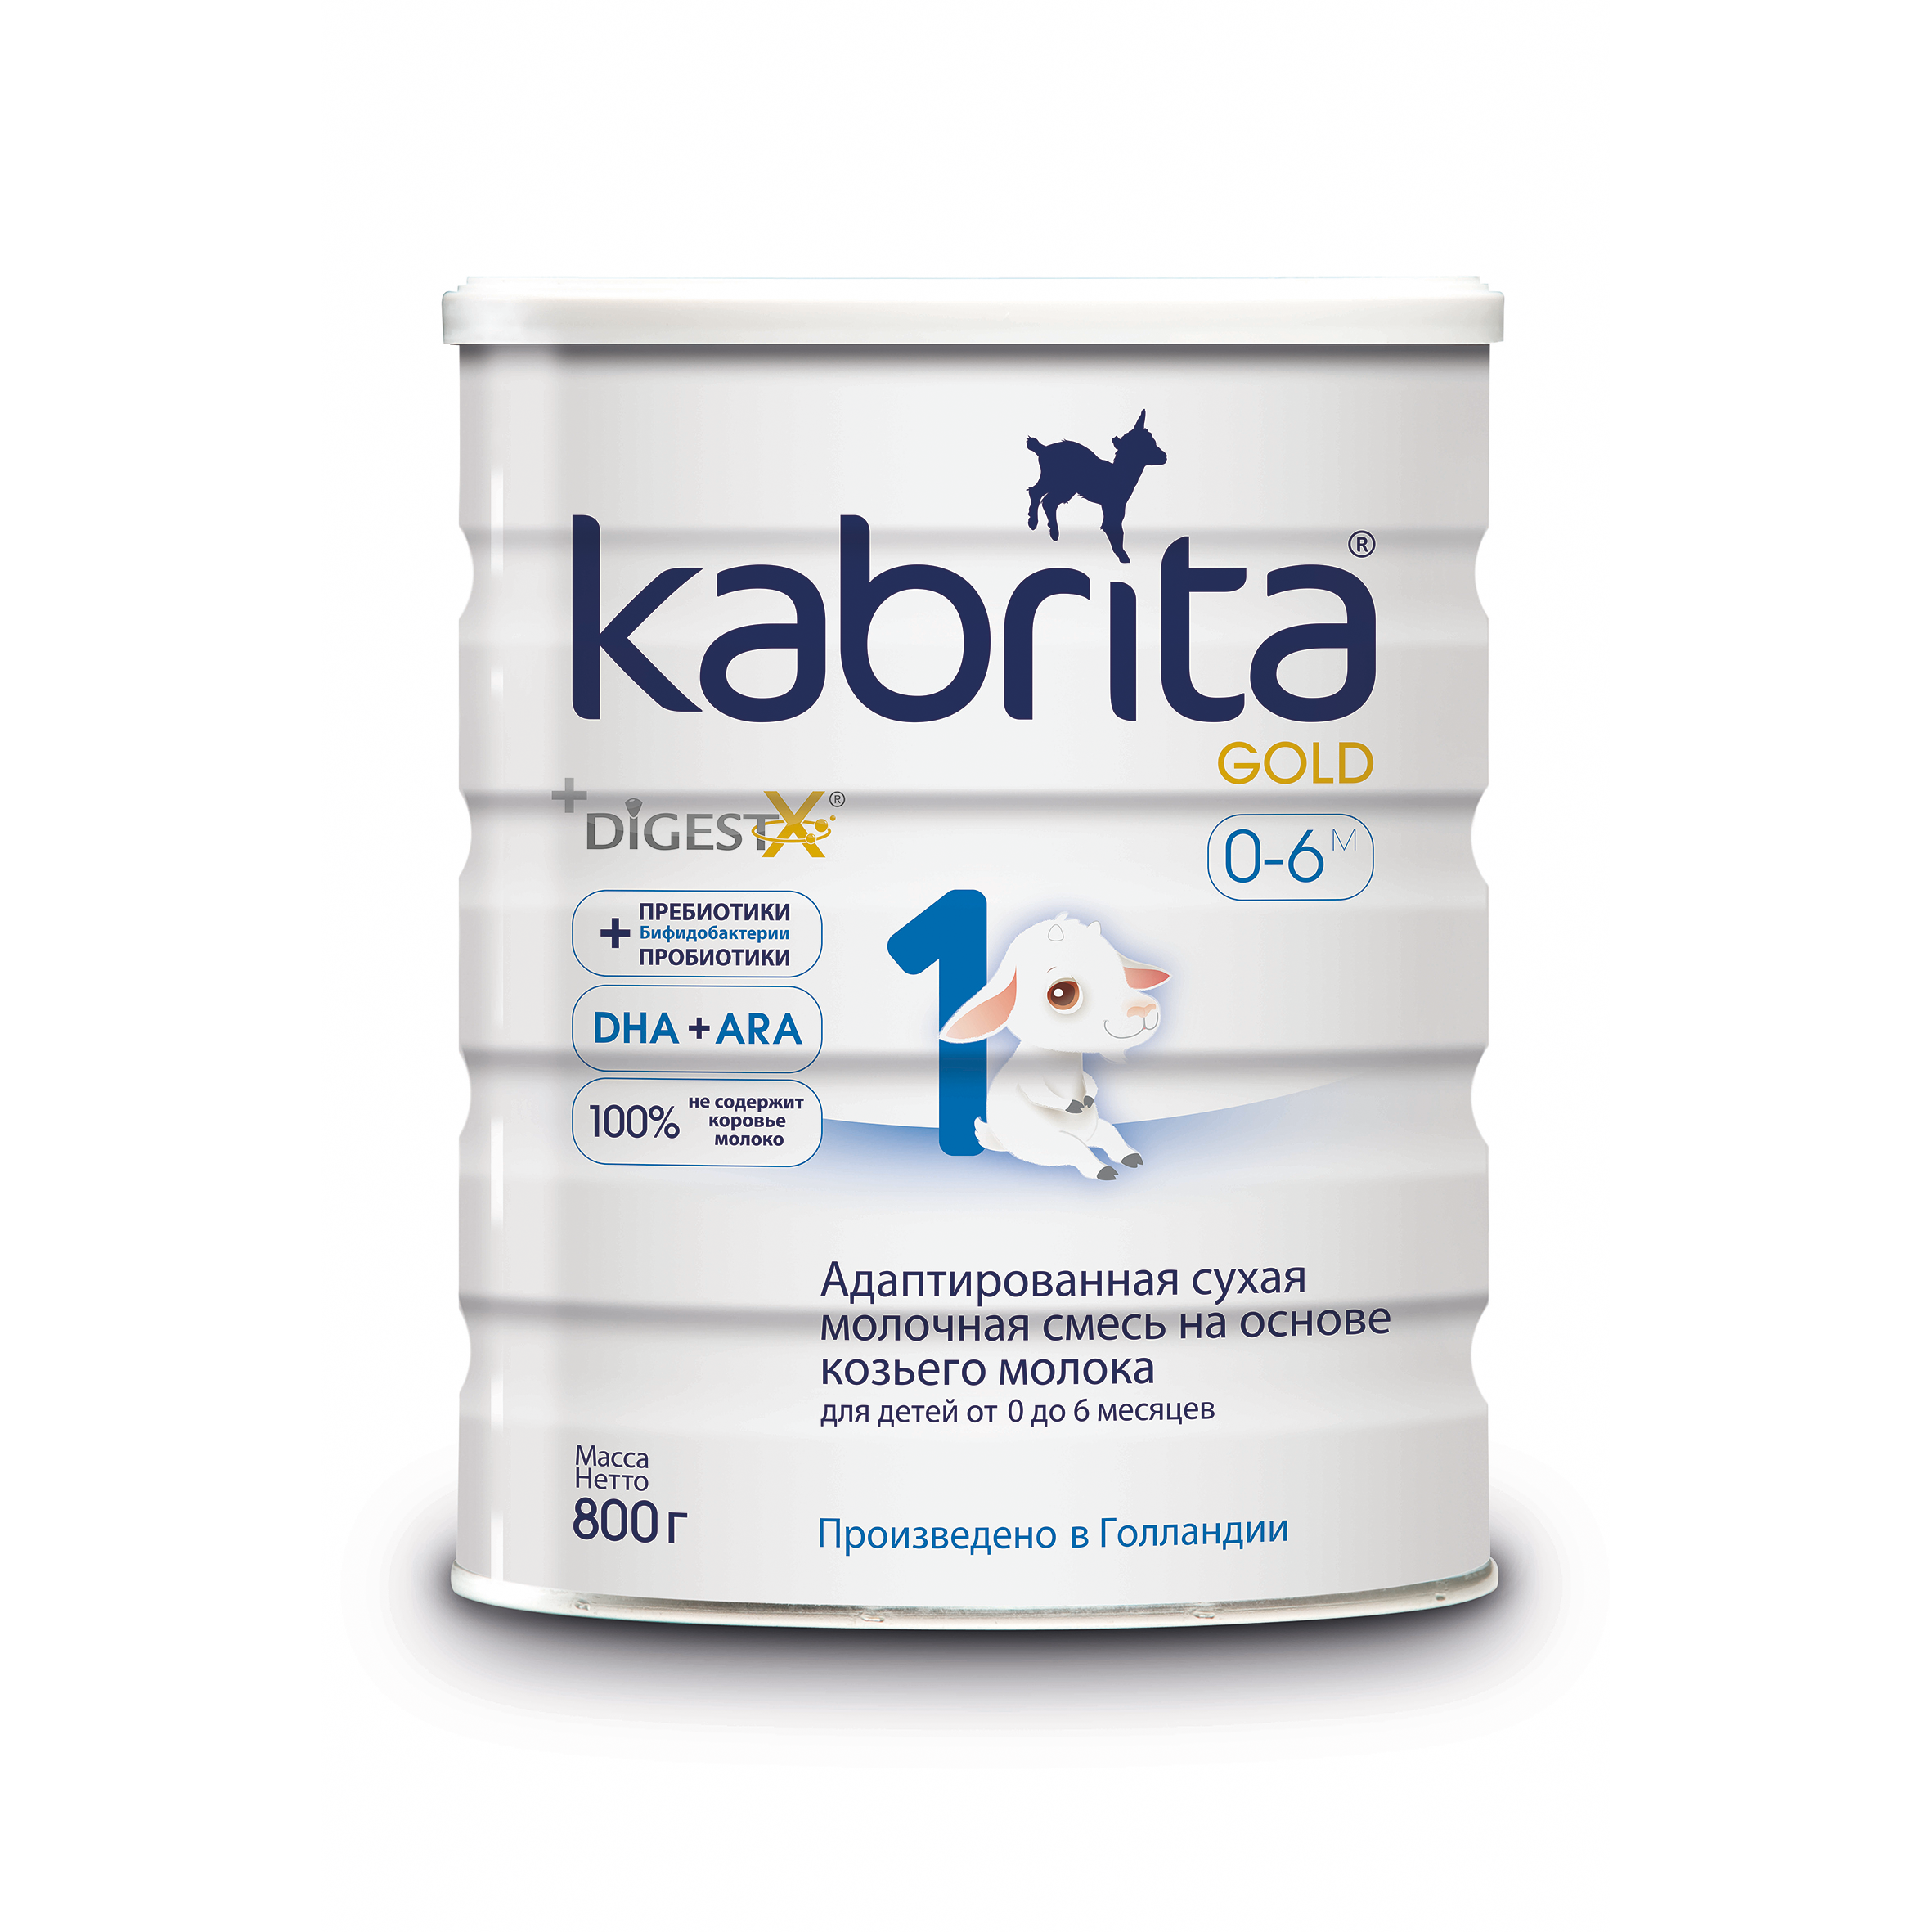 Смесь на основе козьего молока Kabrita Gold от 0 до 6 мес. 800 г смесь на основе козьего молока бибиколь нэнни 4 от 18 мес 400 г